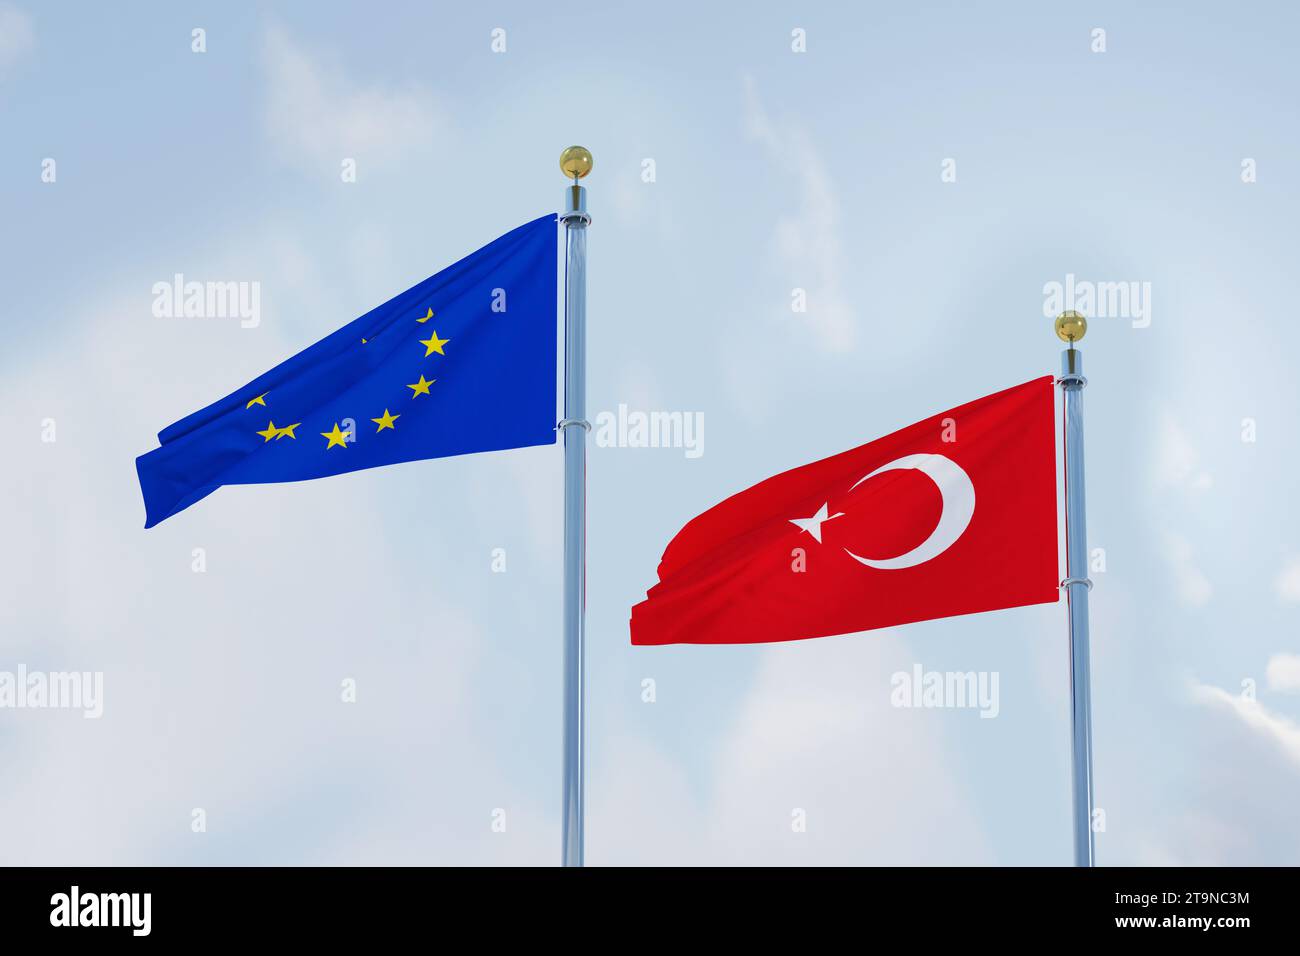 Drapeau de l'Union européenne avec le drapeau turc, entrée de Türkiye dans l'Union européenne Banque D'Images